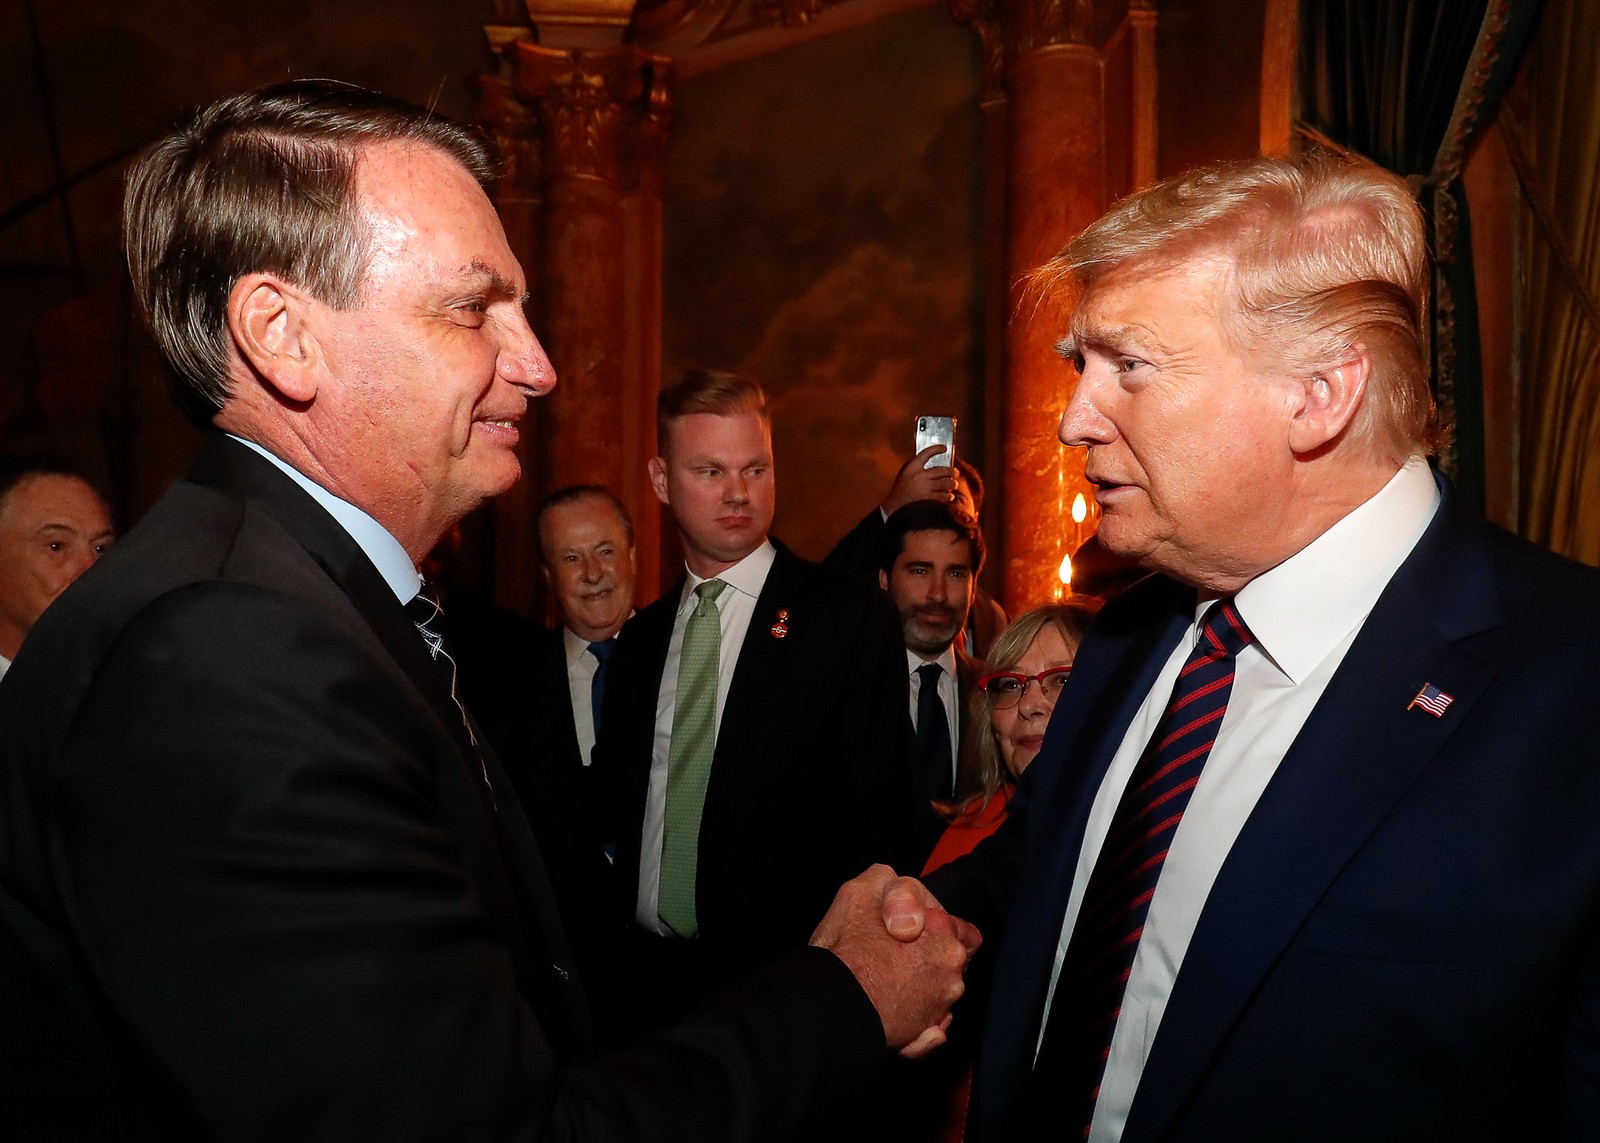 O presidente Bolsonaro é recebido pelo americano Donald Trump em sua residência em Mar-a-Lago, em sua visita à Flórida, em março de 2020PR - 07/03/2020